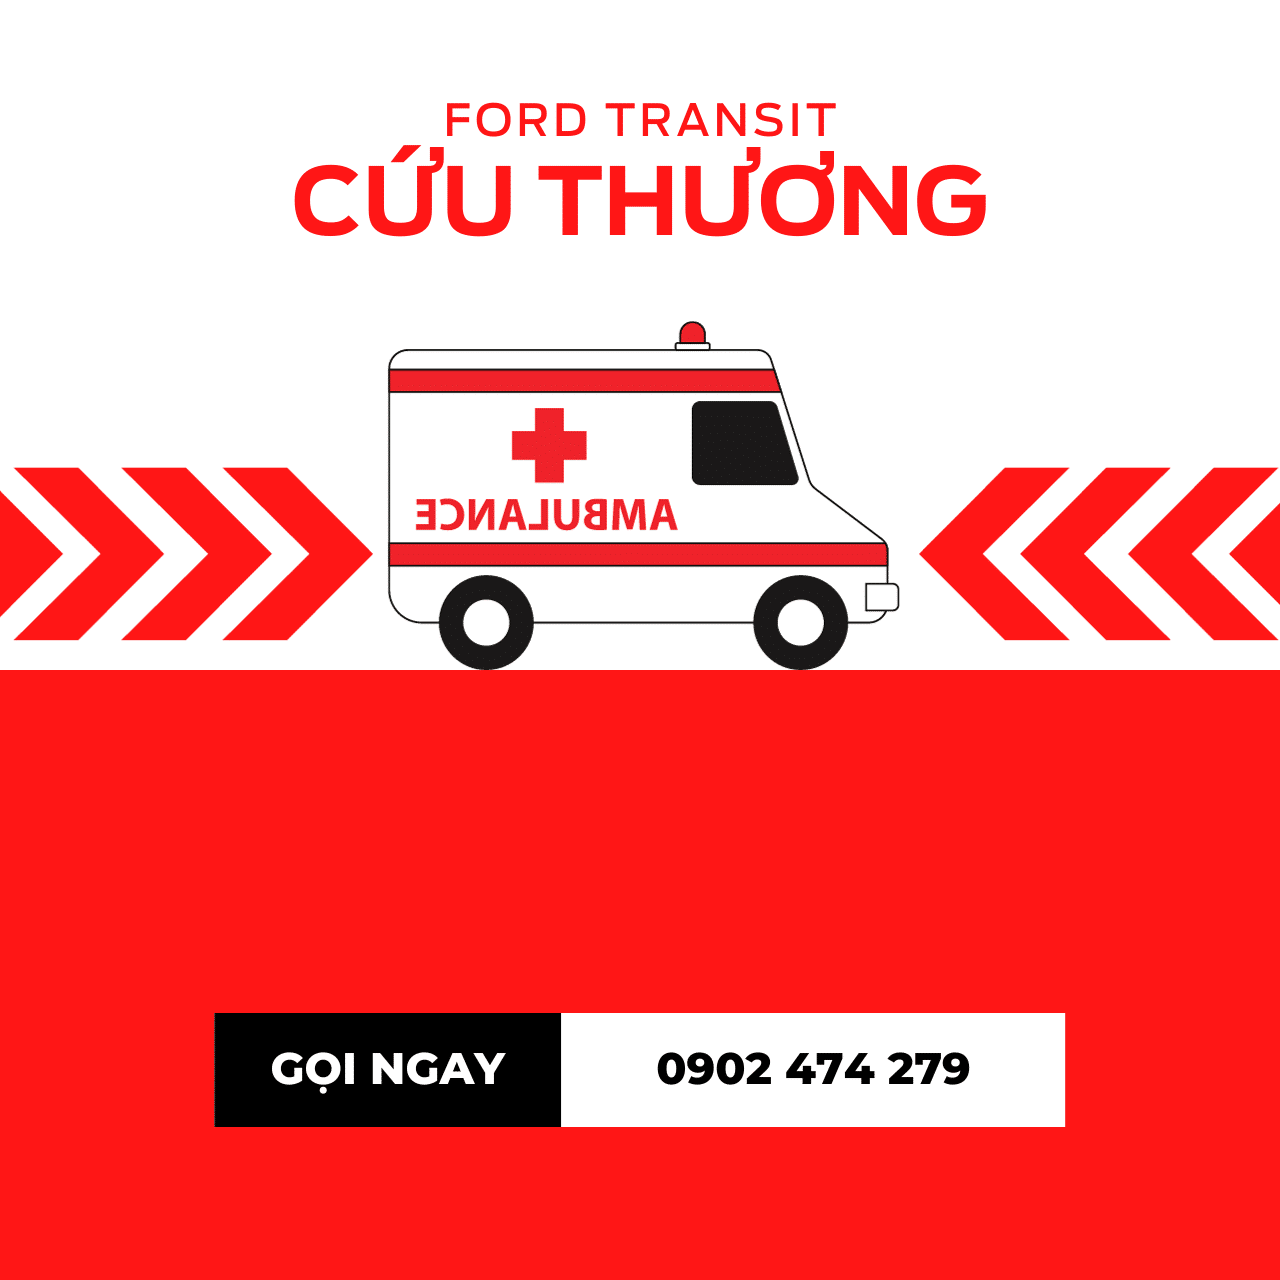 khuyen-mai-ford-transit-cuu-thuong-thang-1